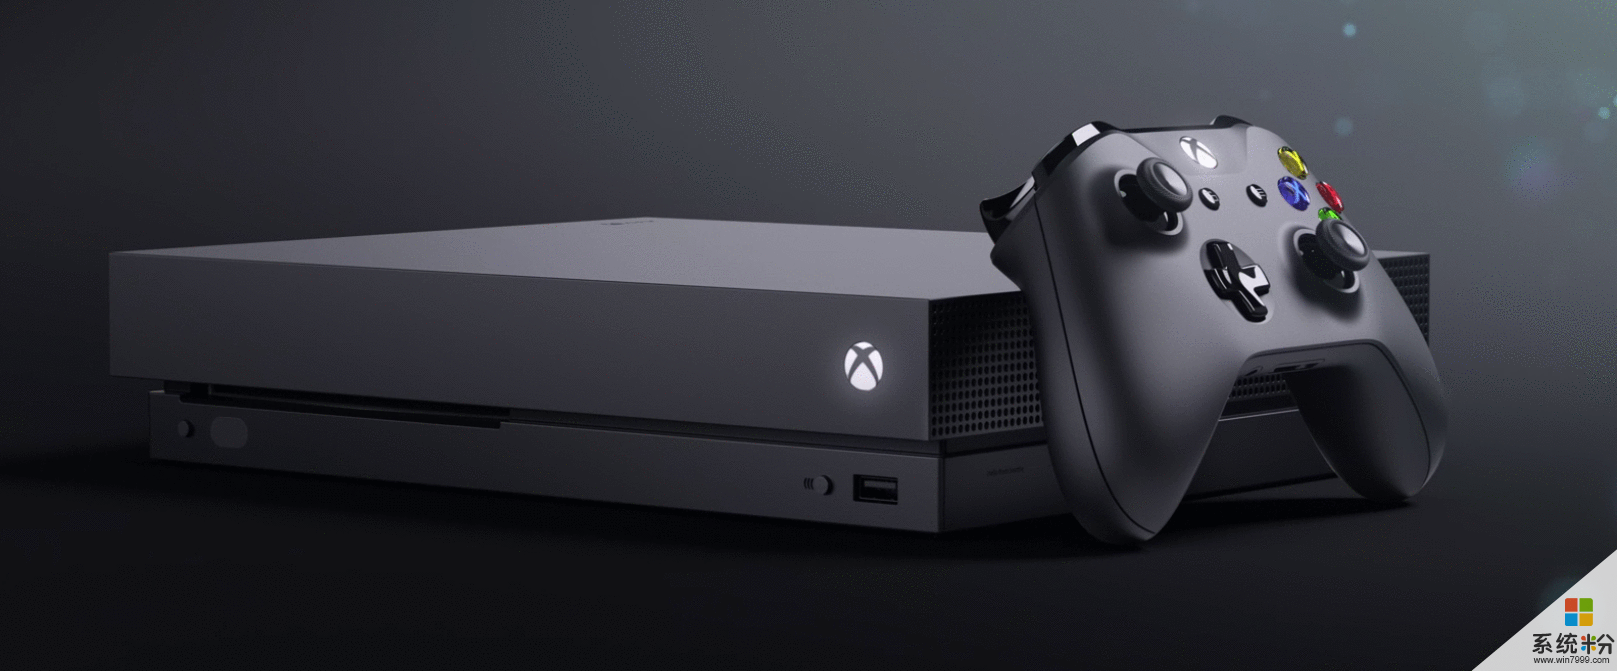 微软正式发布新一代游戏主机Xbox One X(2)